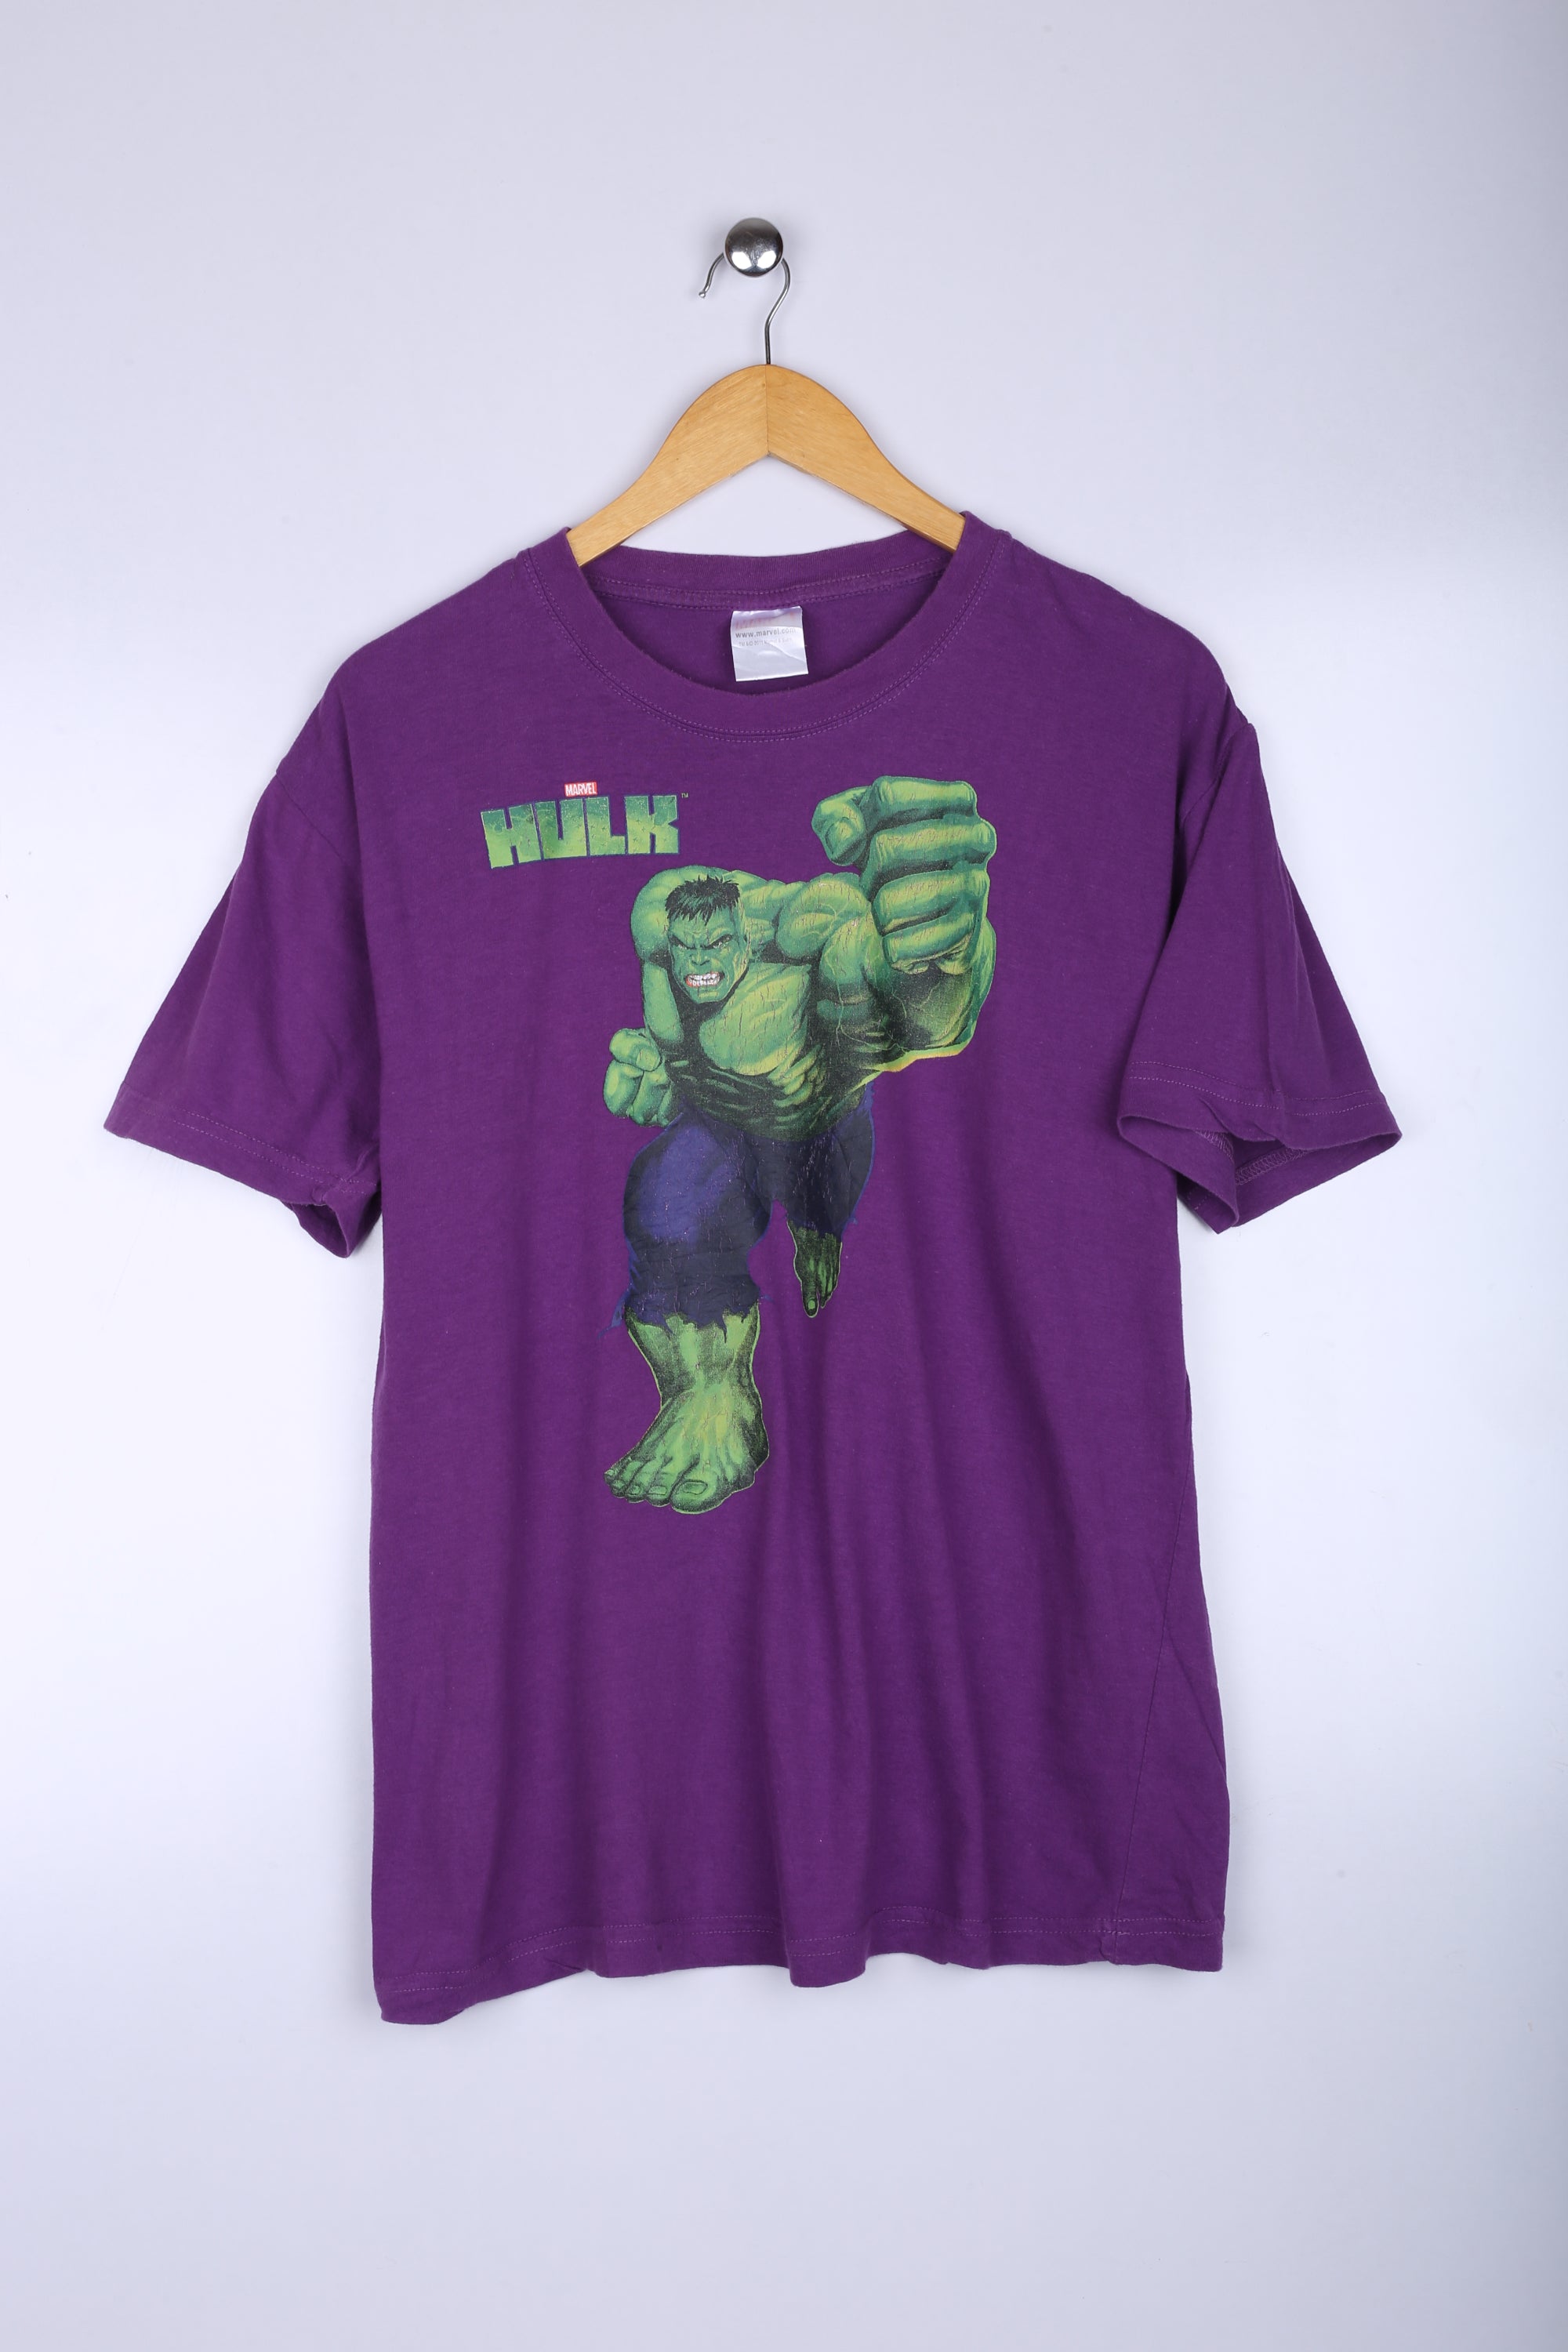 Vintage Marvel The Hulk Graphic Tee Purple